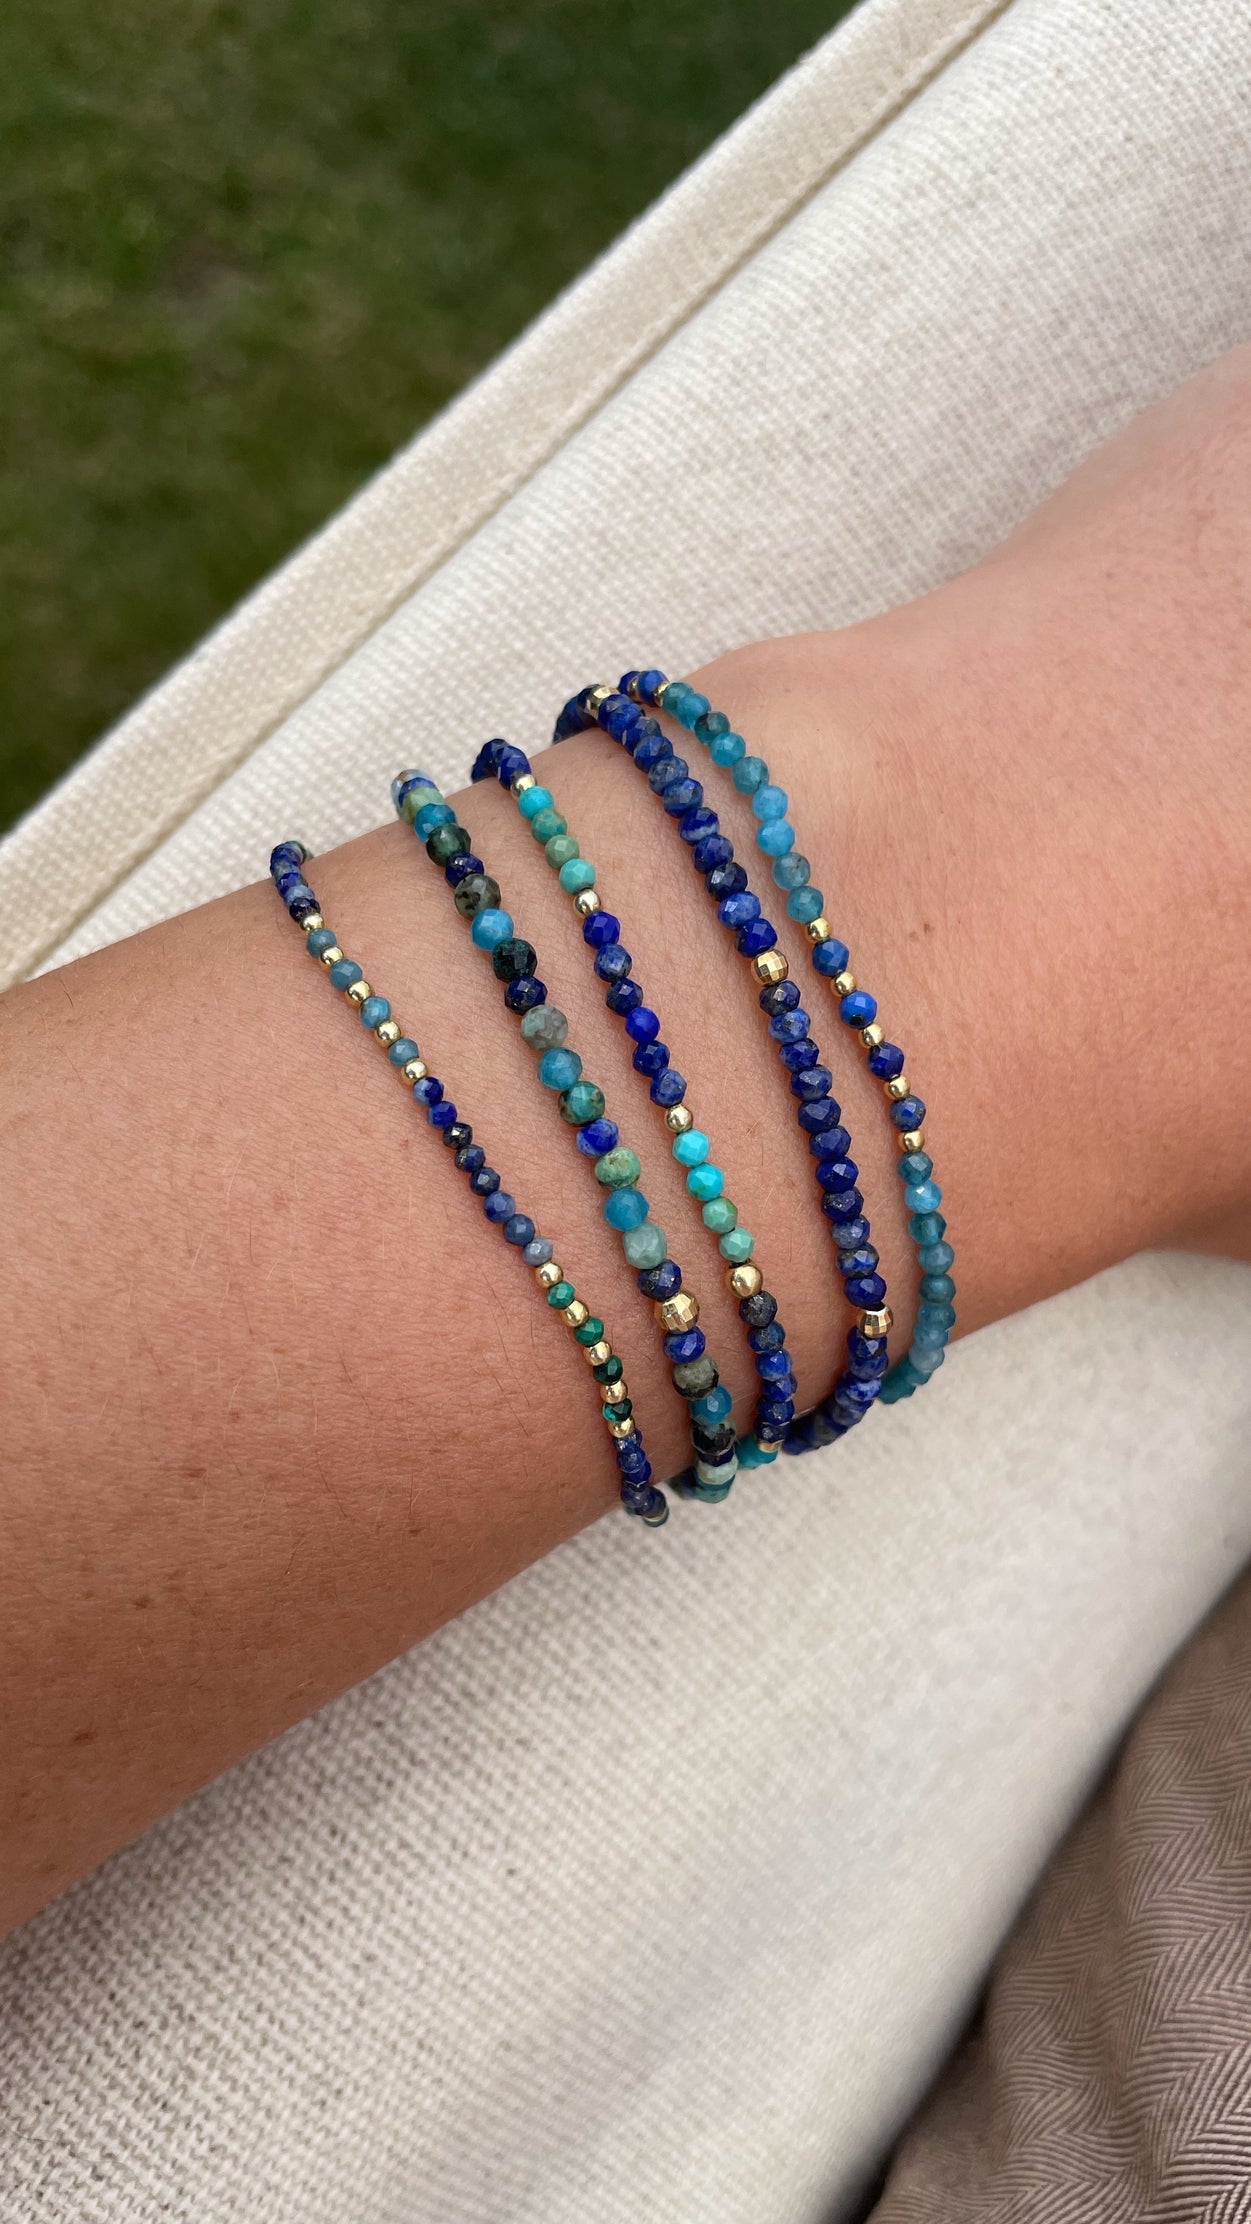 The Ocean Blue 2 bracelet